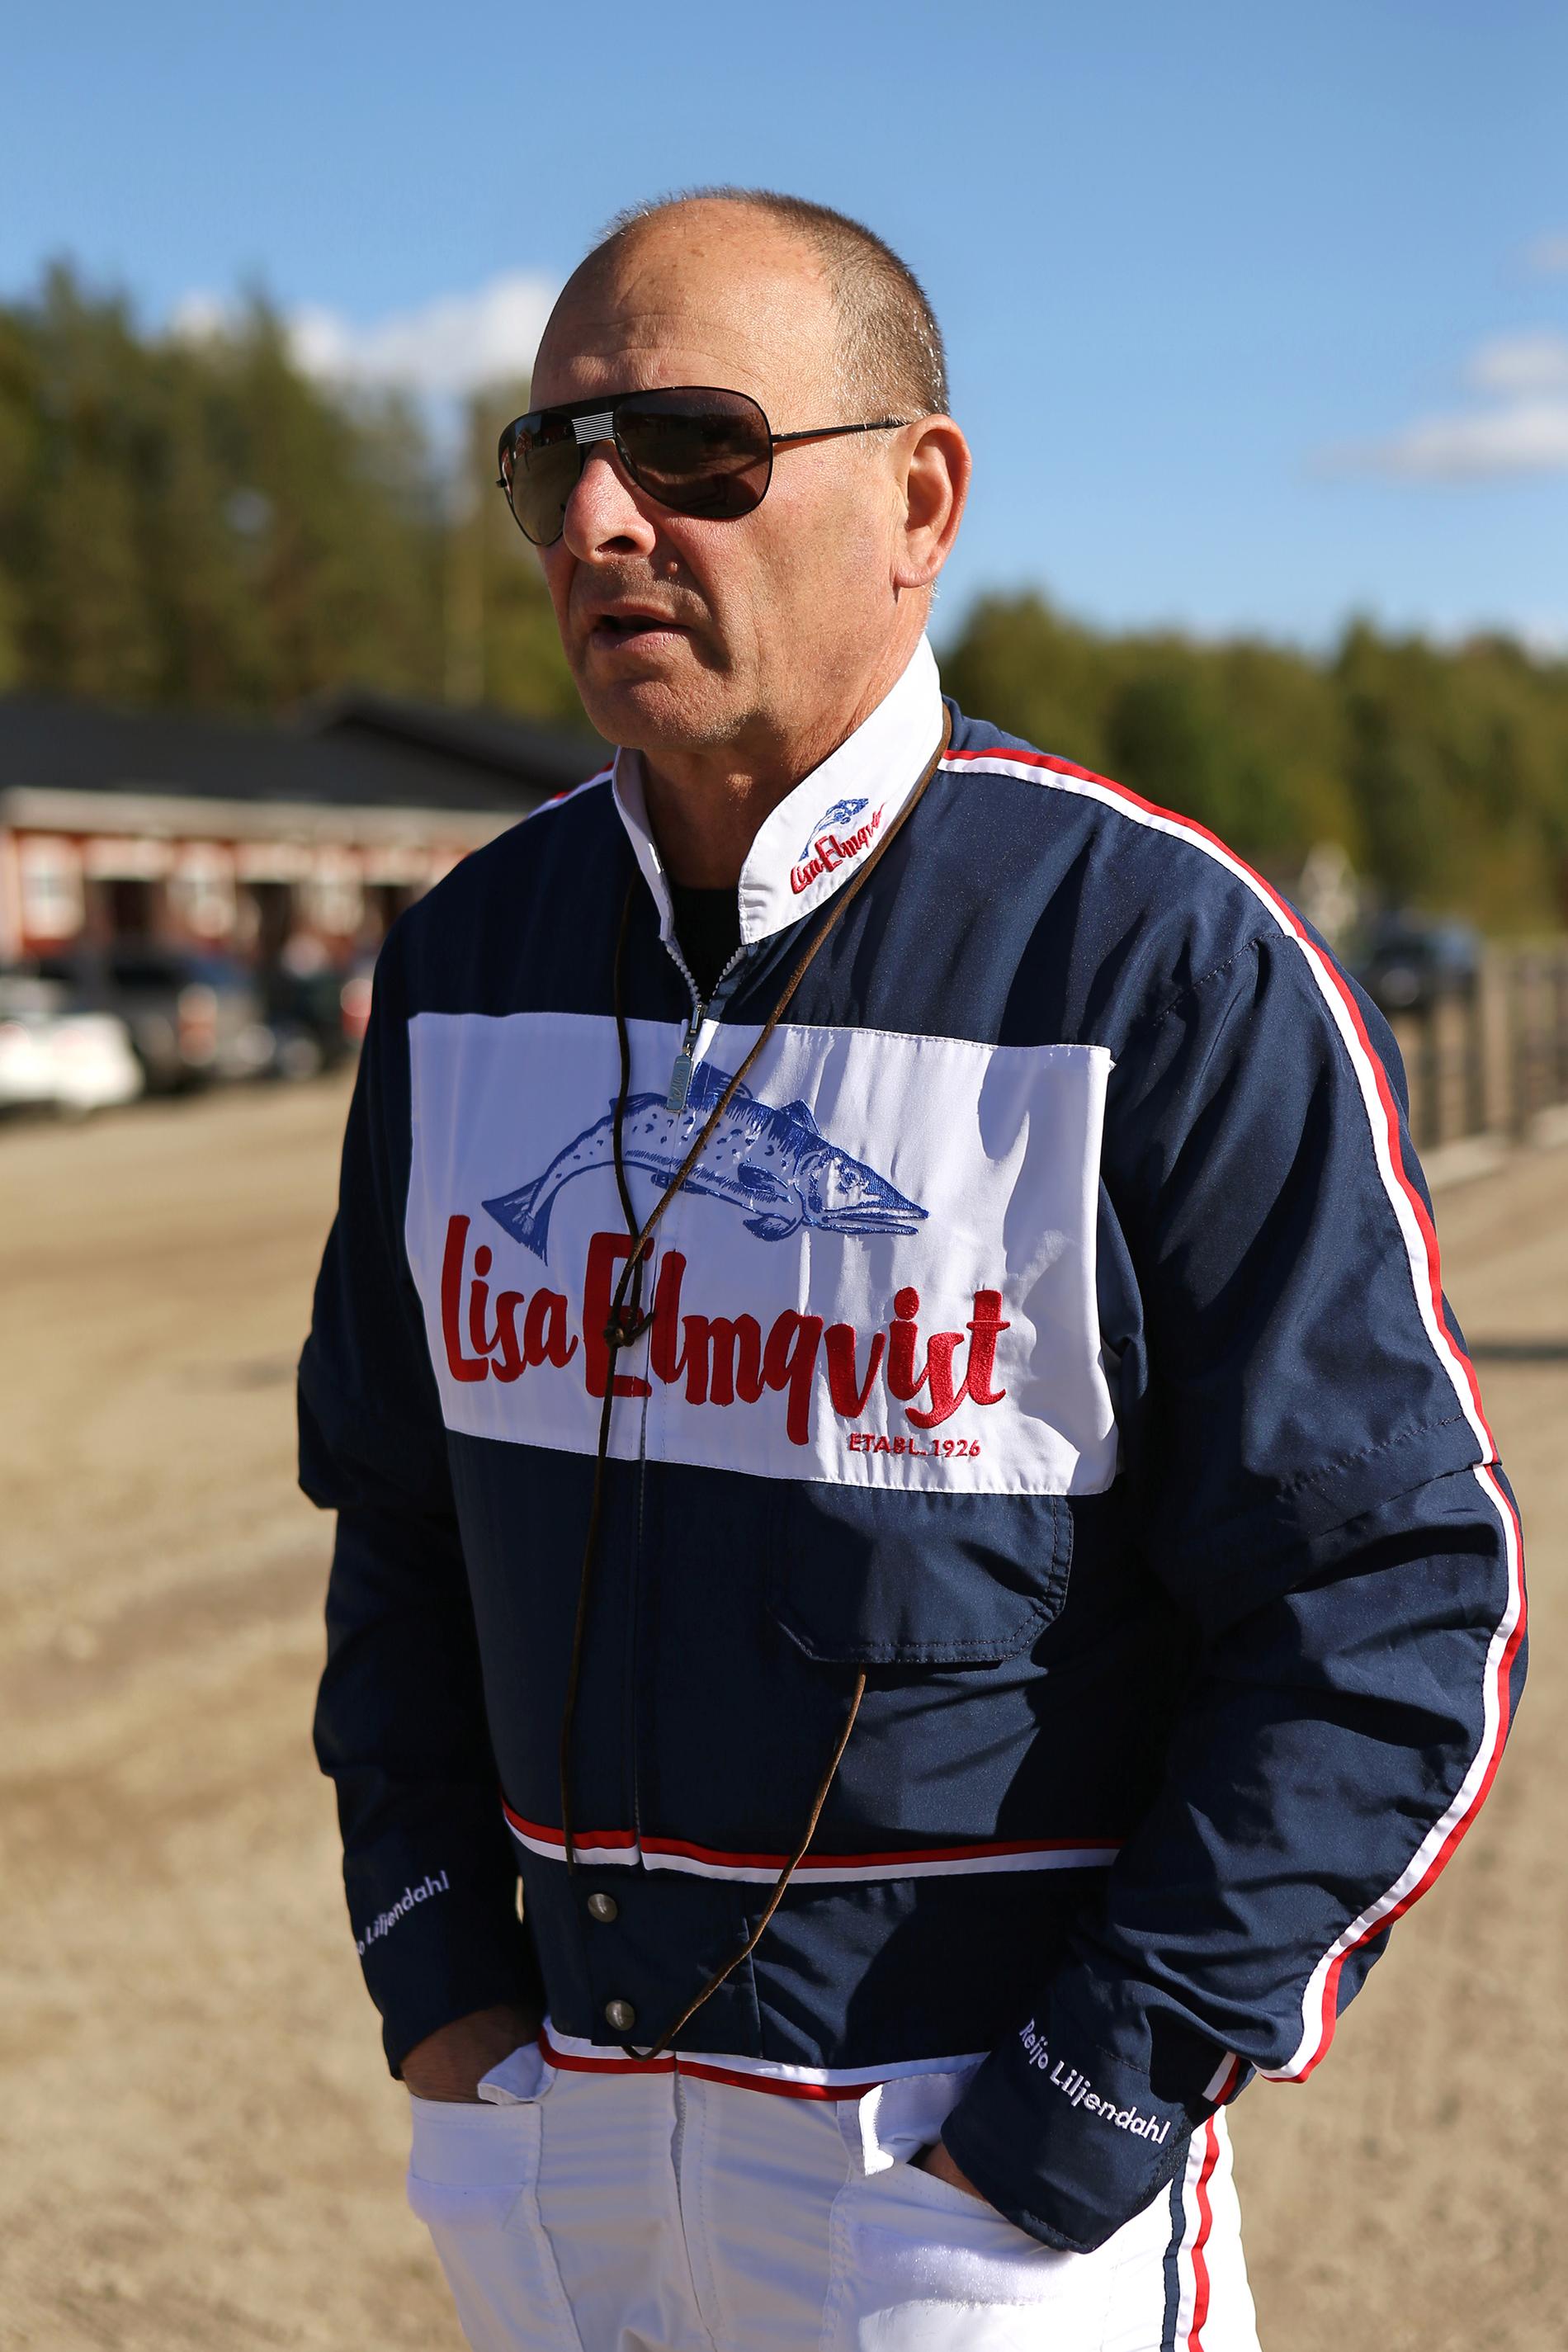 Reijo Liljendahl